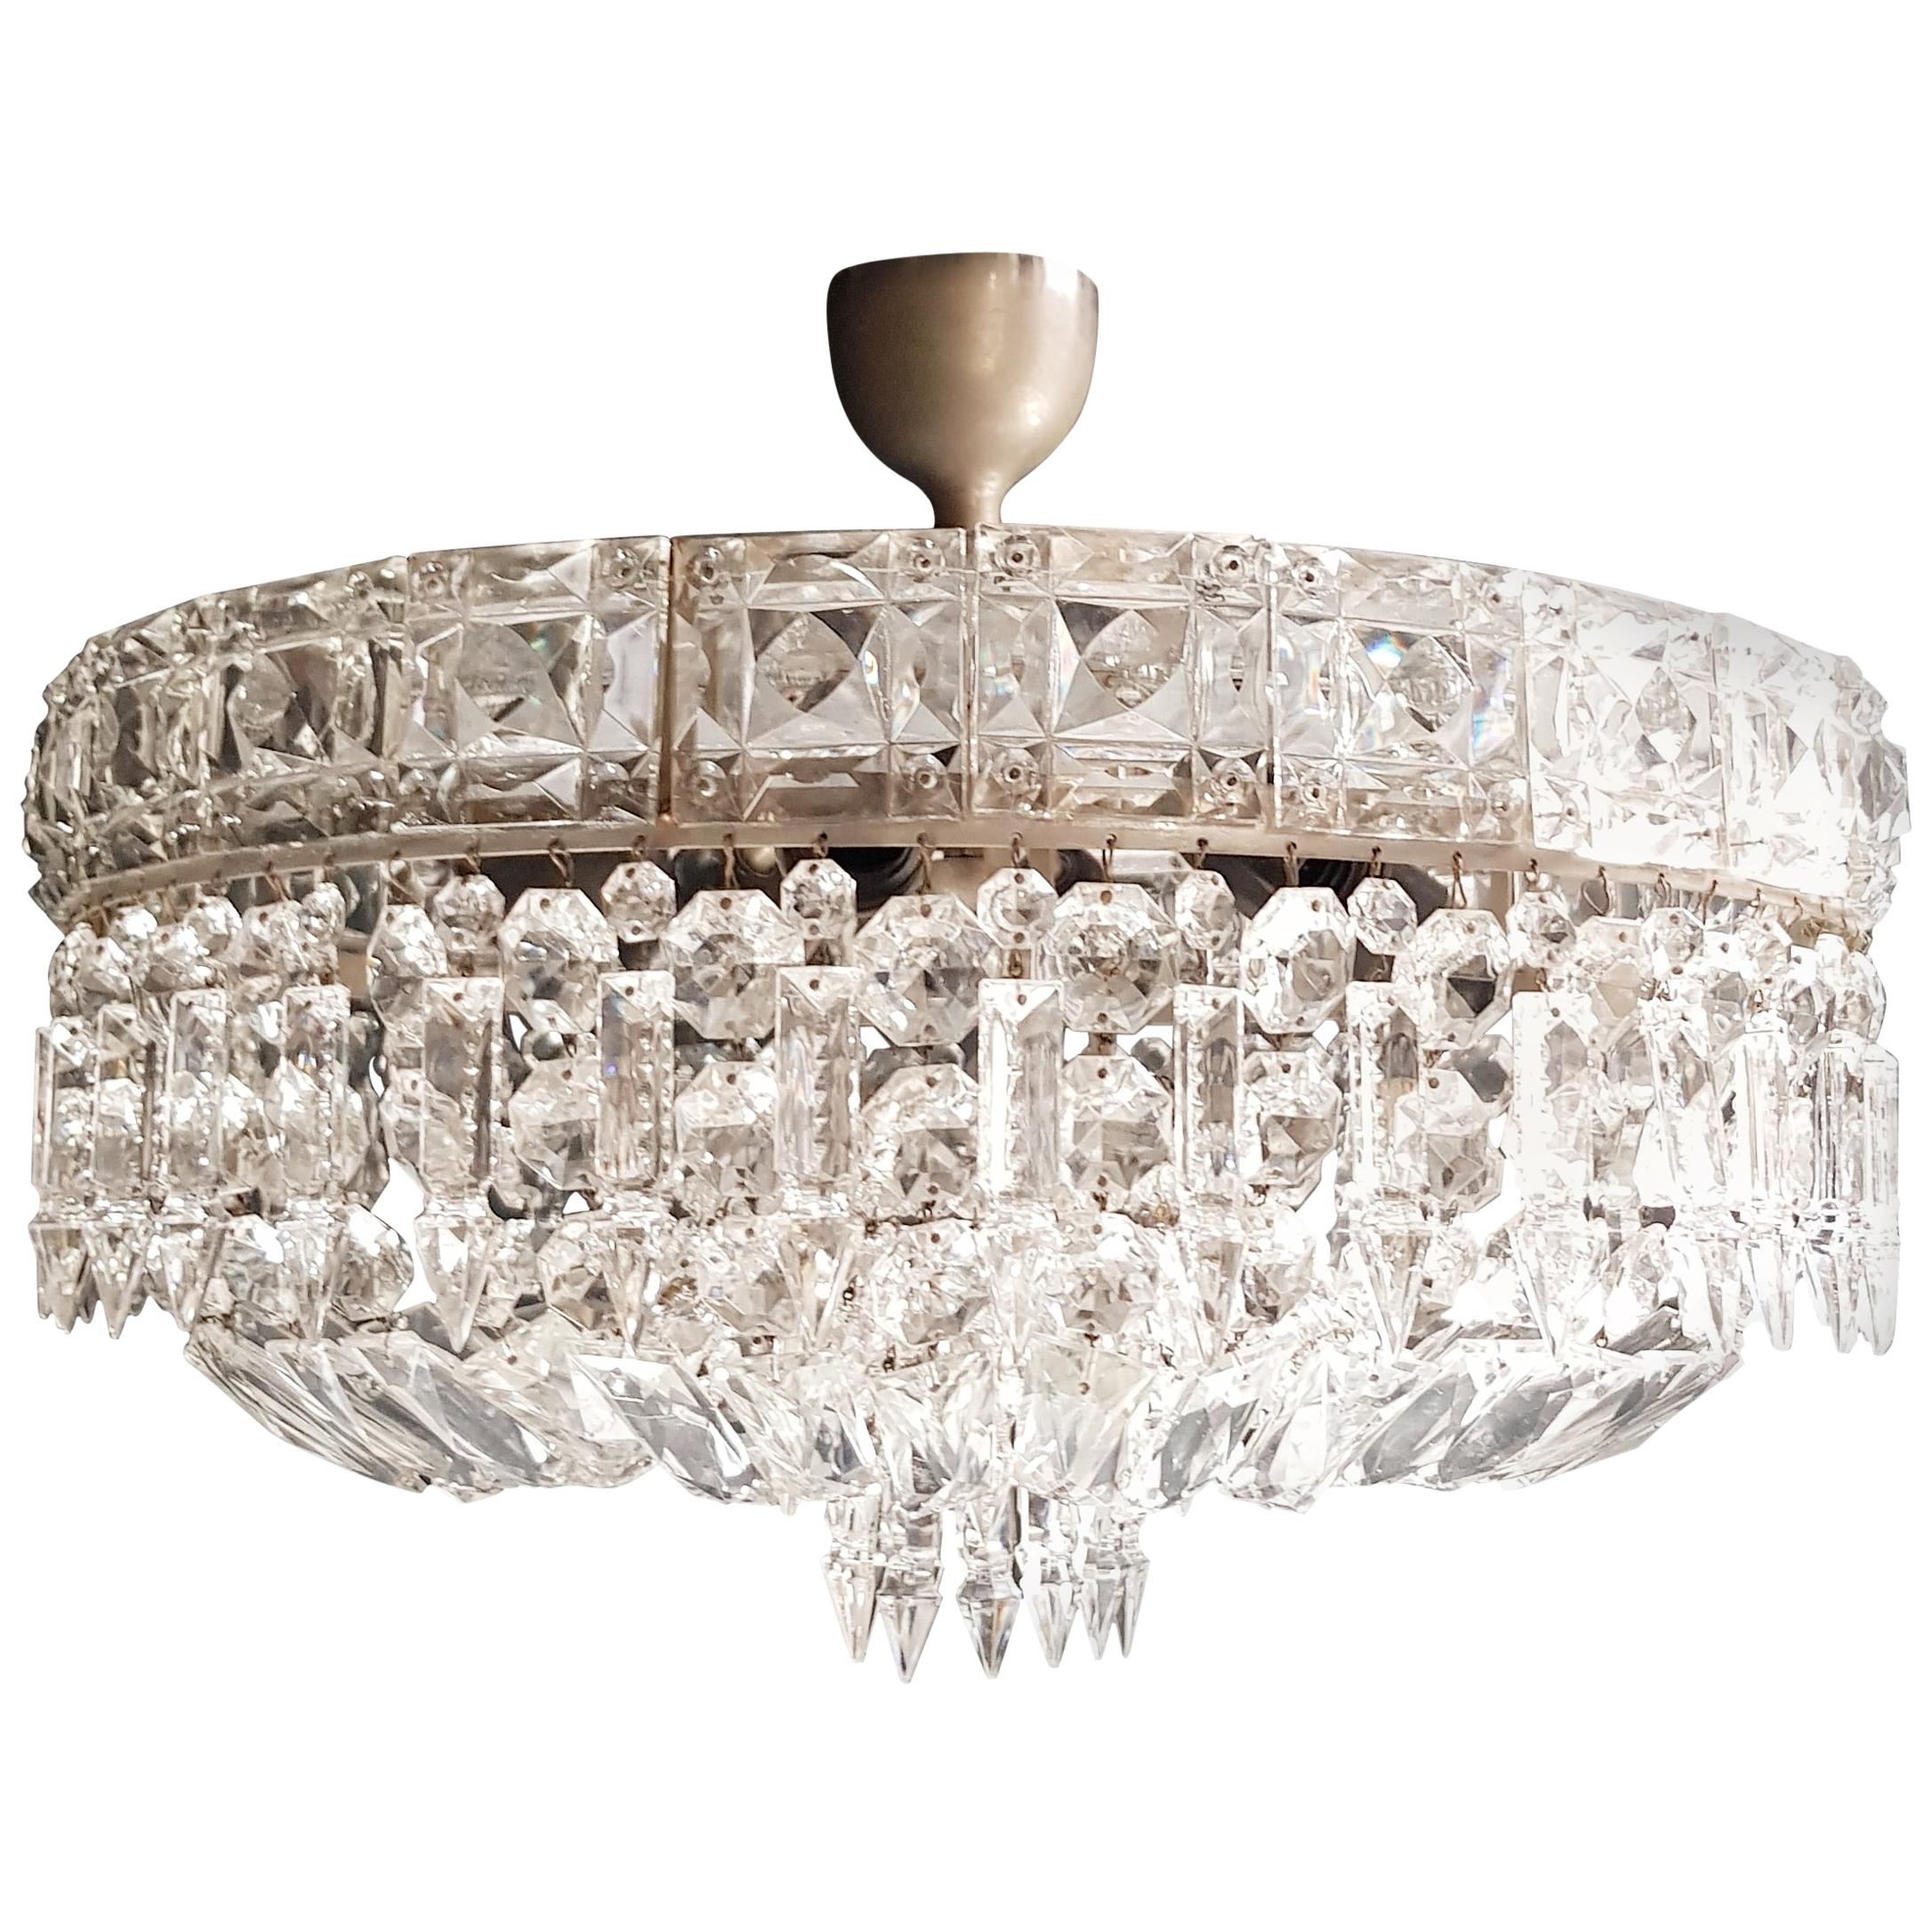 Art Deco Low Plafonnier Silver Crystal Chandelier Lustre Ceiling Lamp Antique